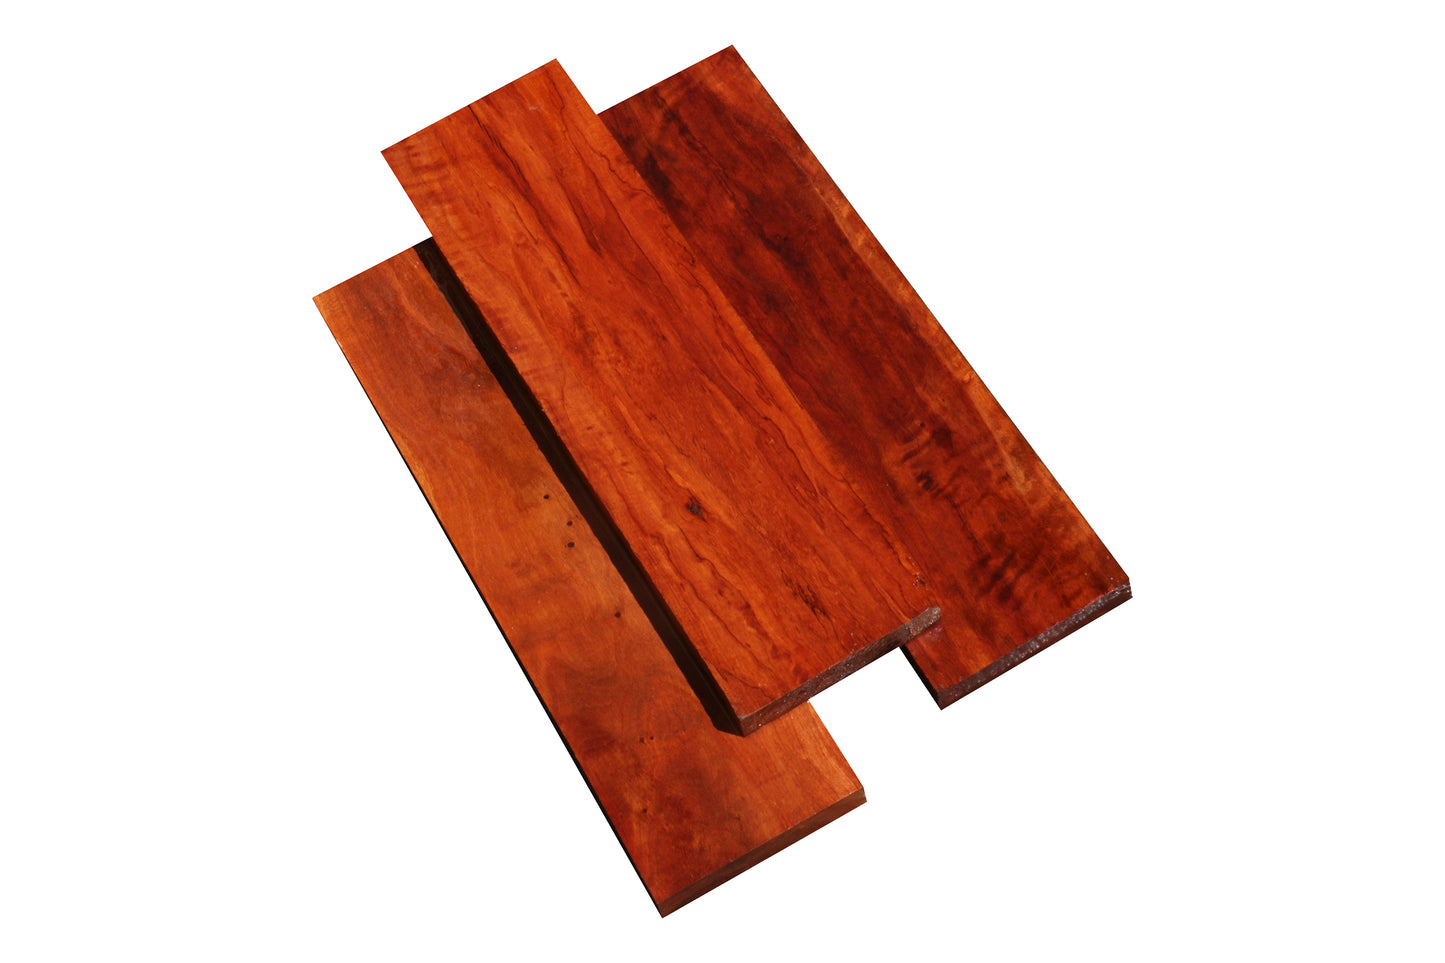 Rambutan Lumber (18" x 3" x 1")